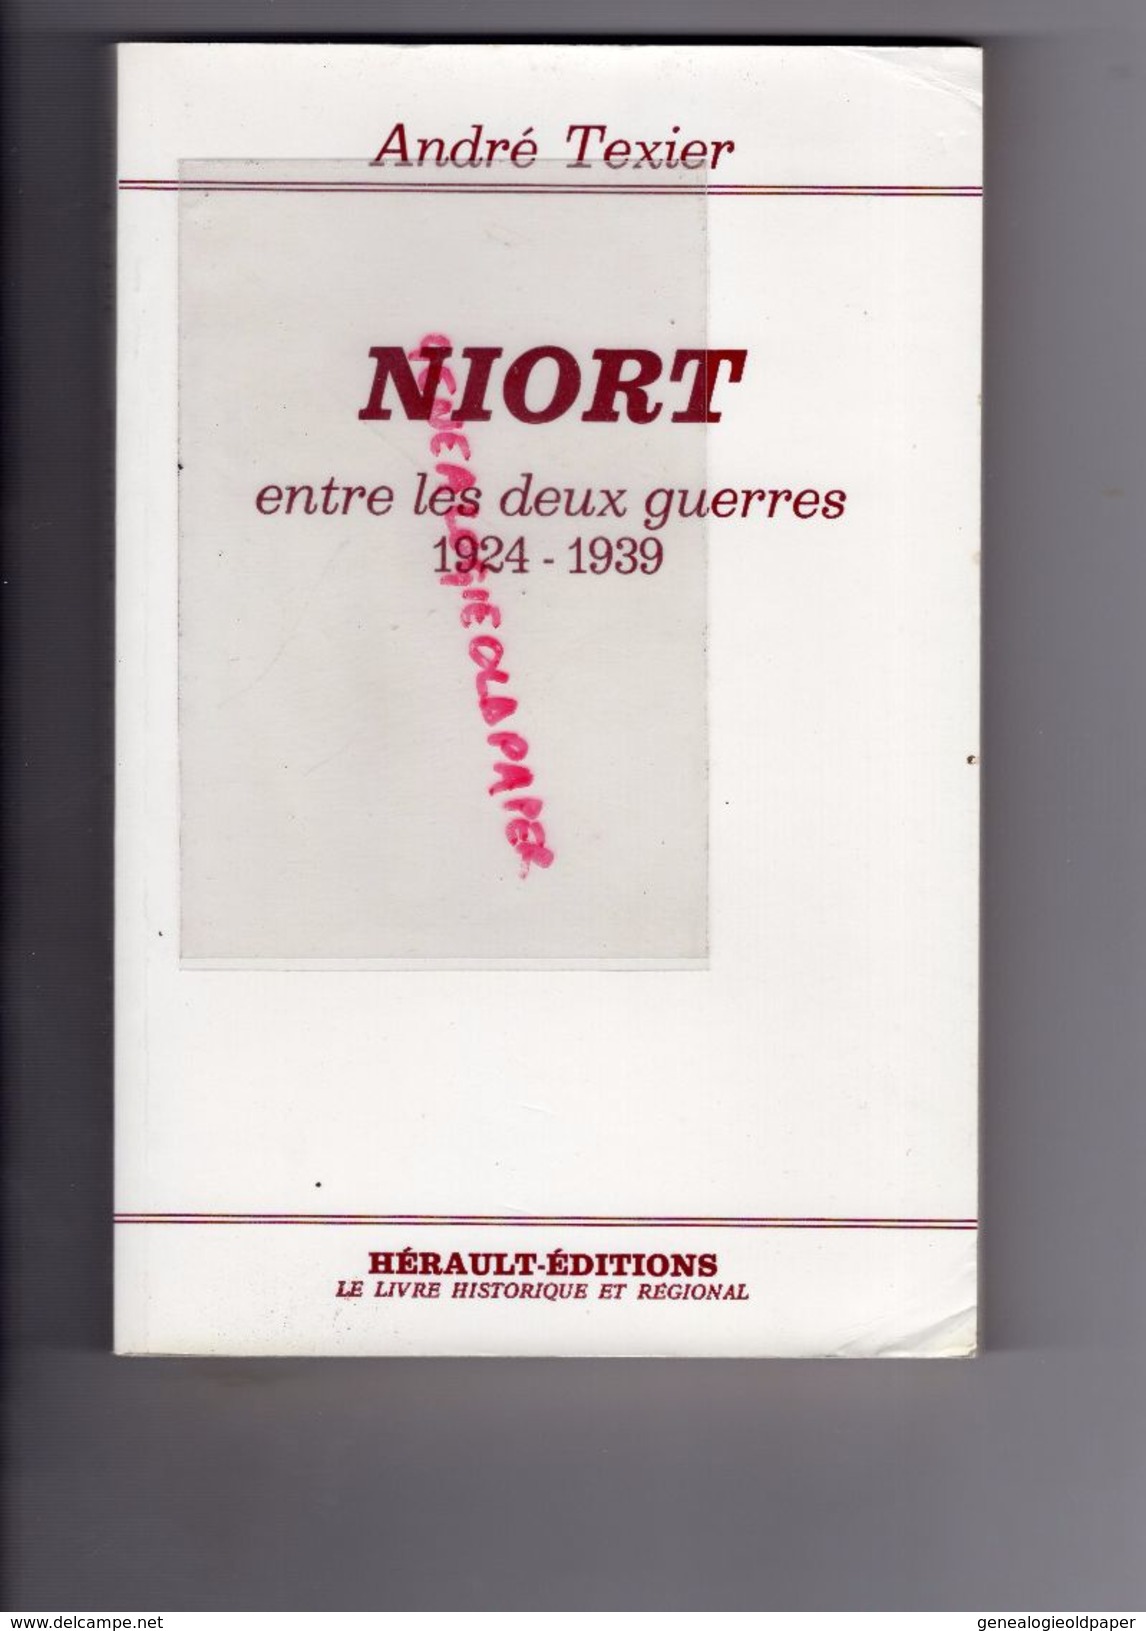 79 - NIORT ENTRE LES DEUX GUERRES -1924 1939- BAKER-ANDRE TEXIER DEDICACE A PAULETTE RIFFEAU-CARTE BERNARD BELLEC MAIRE - Aquitaine